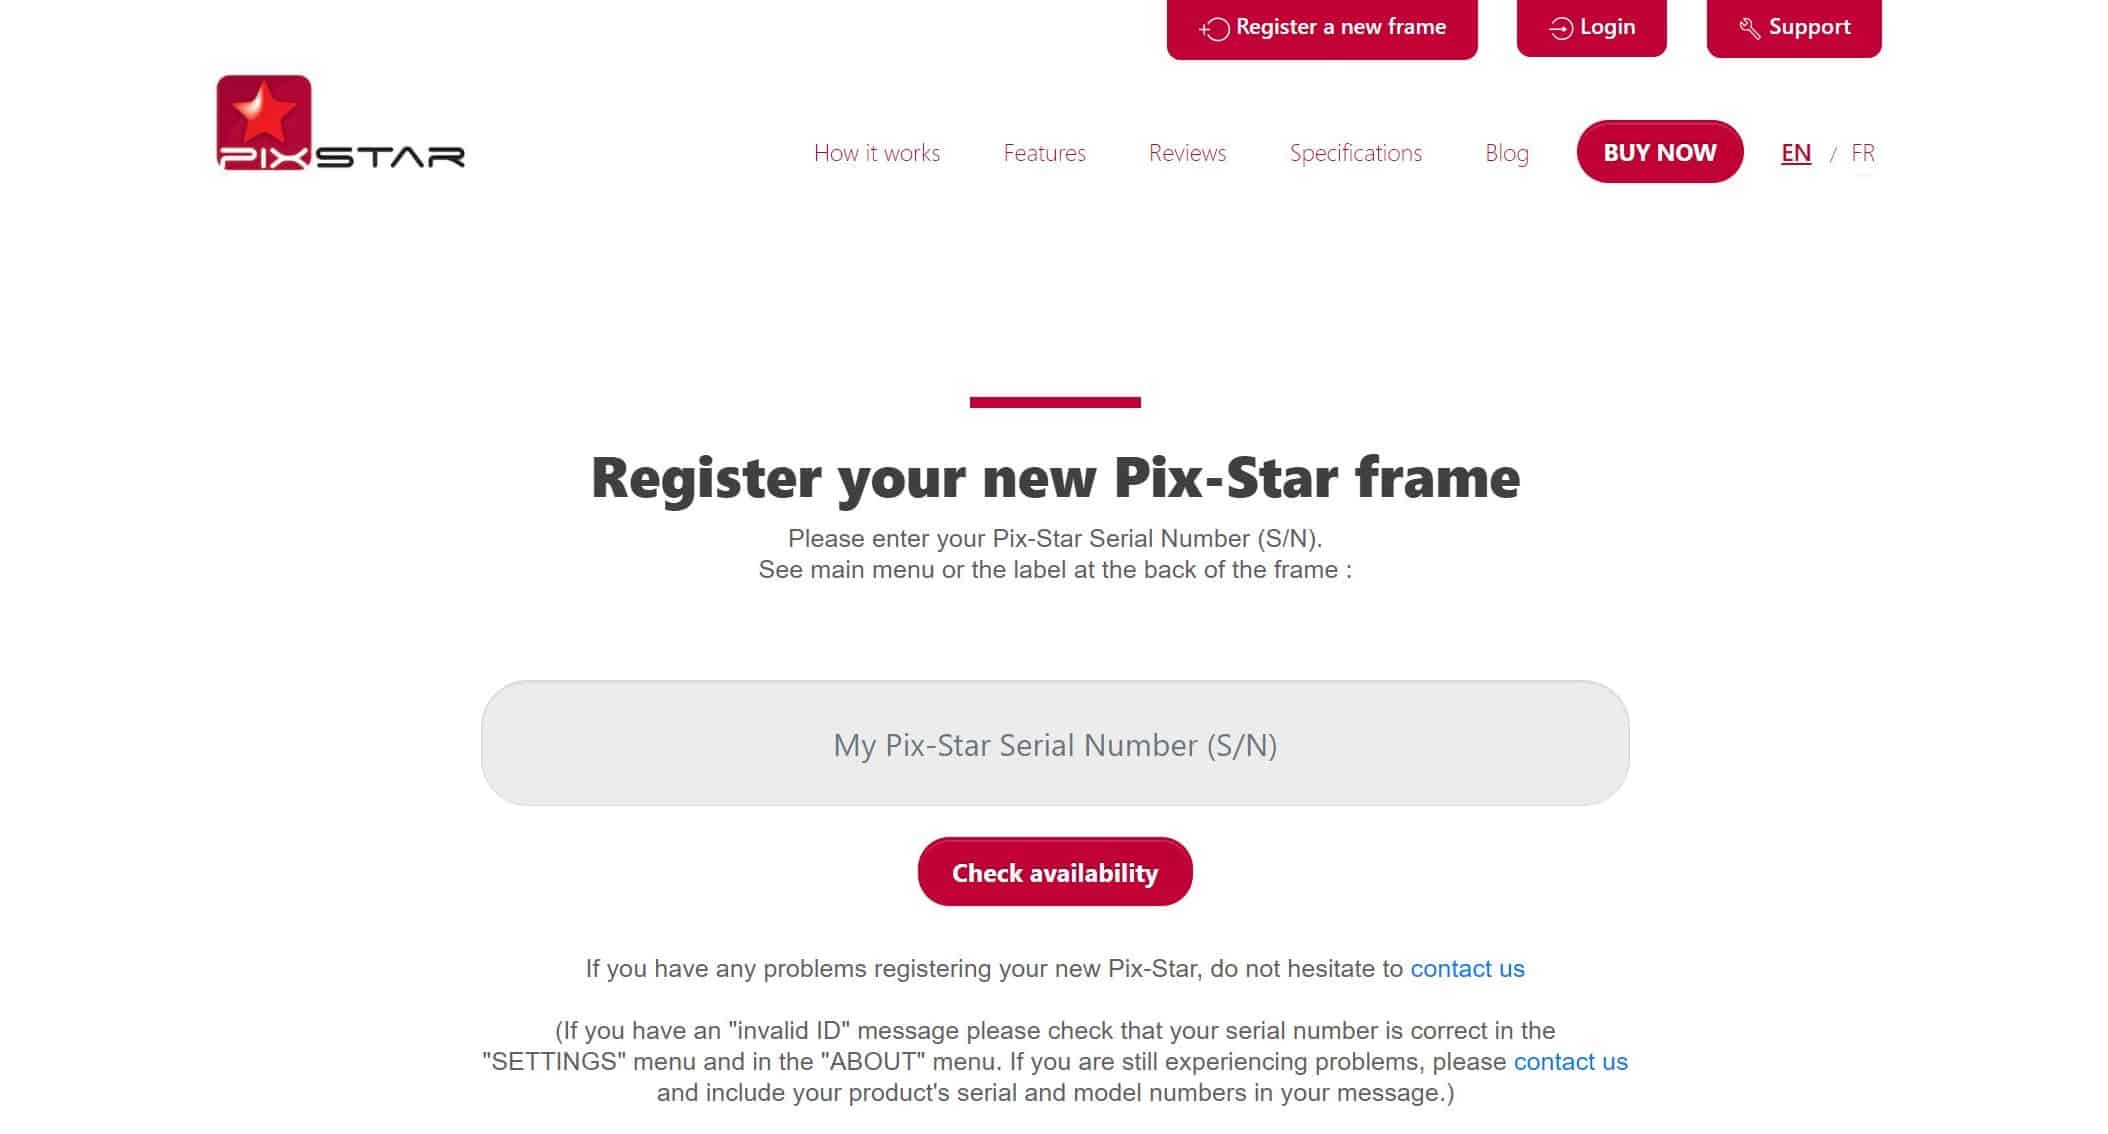 Pix-Star Registrar un nuevo marco